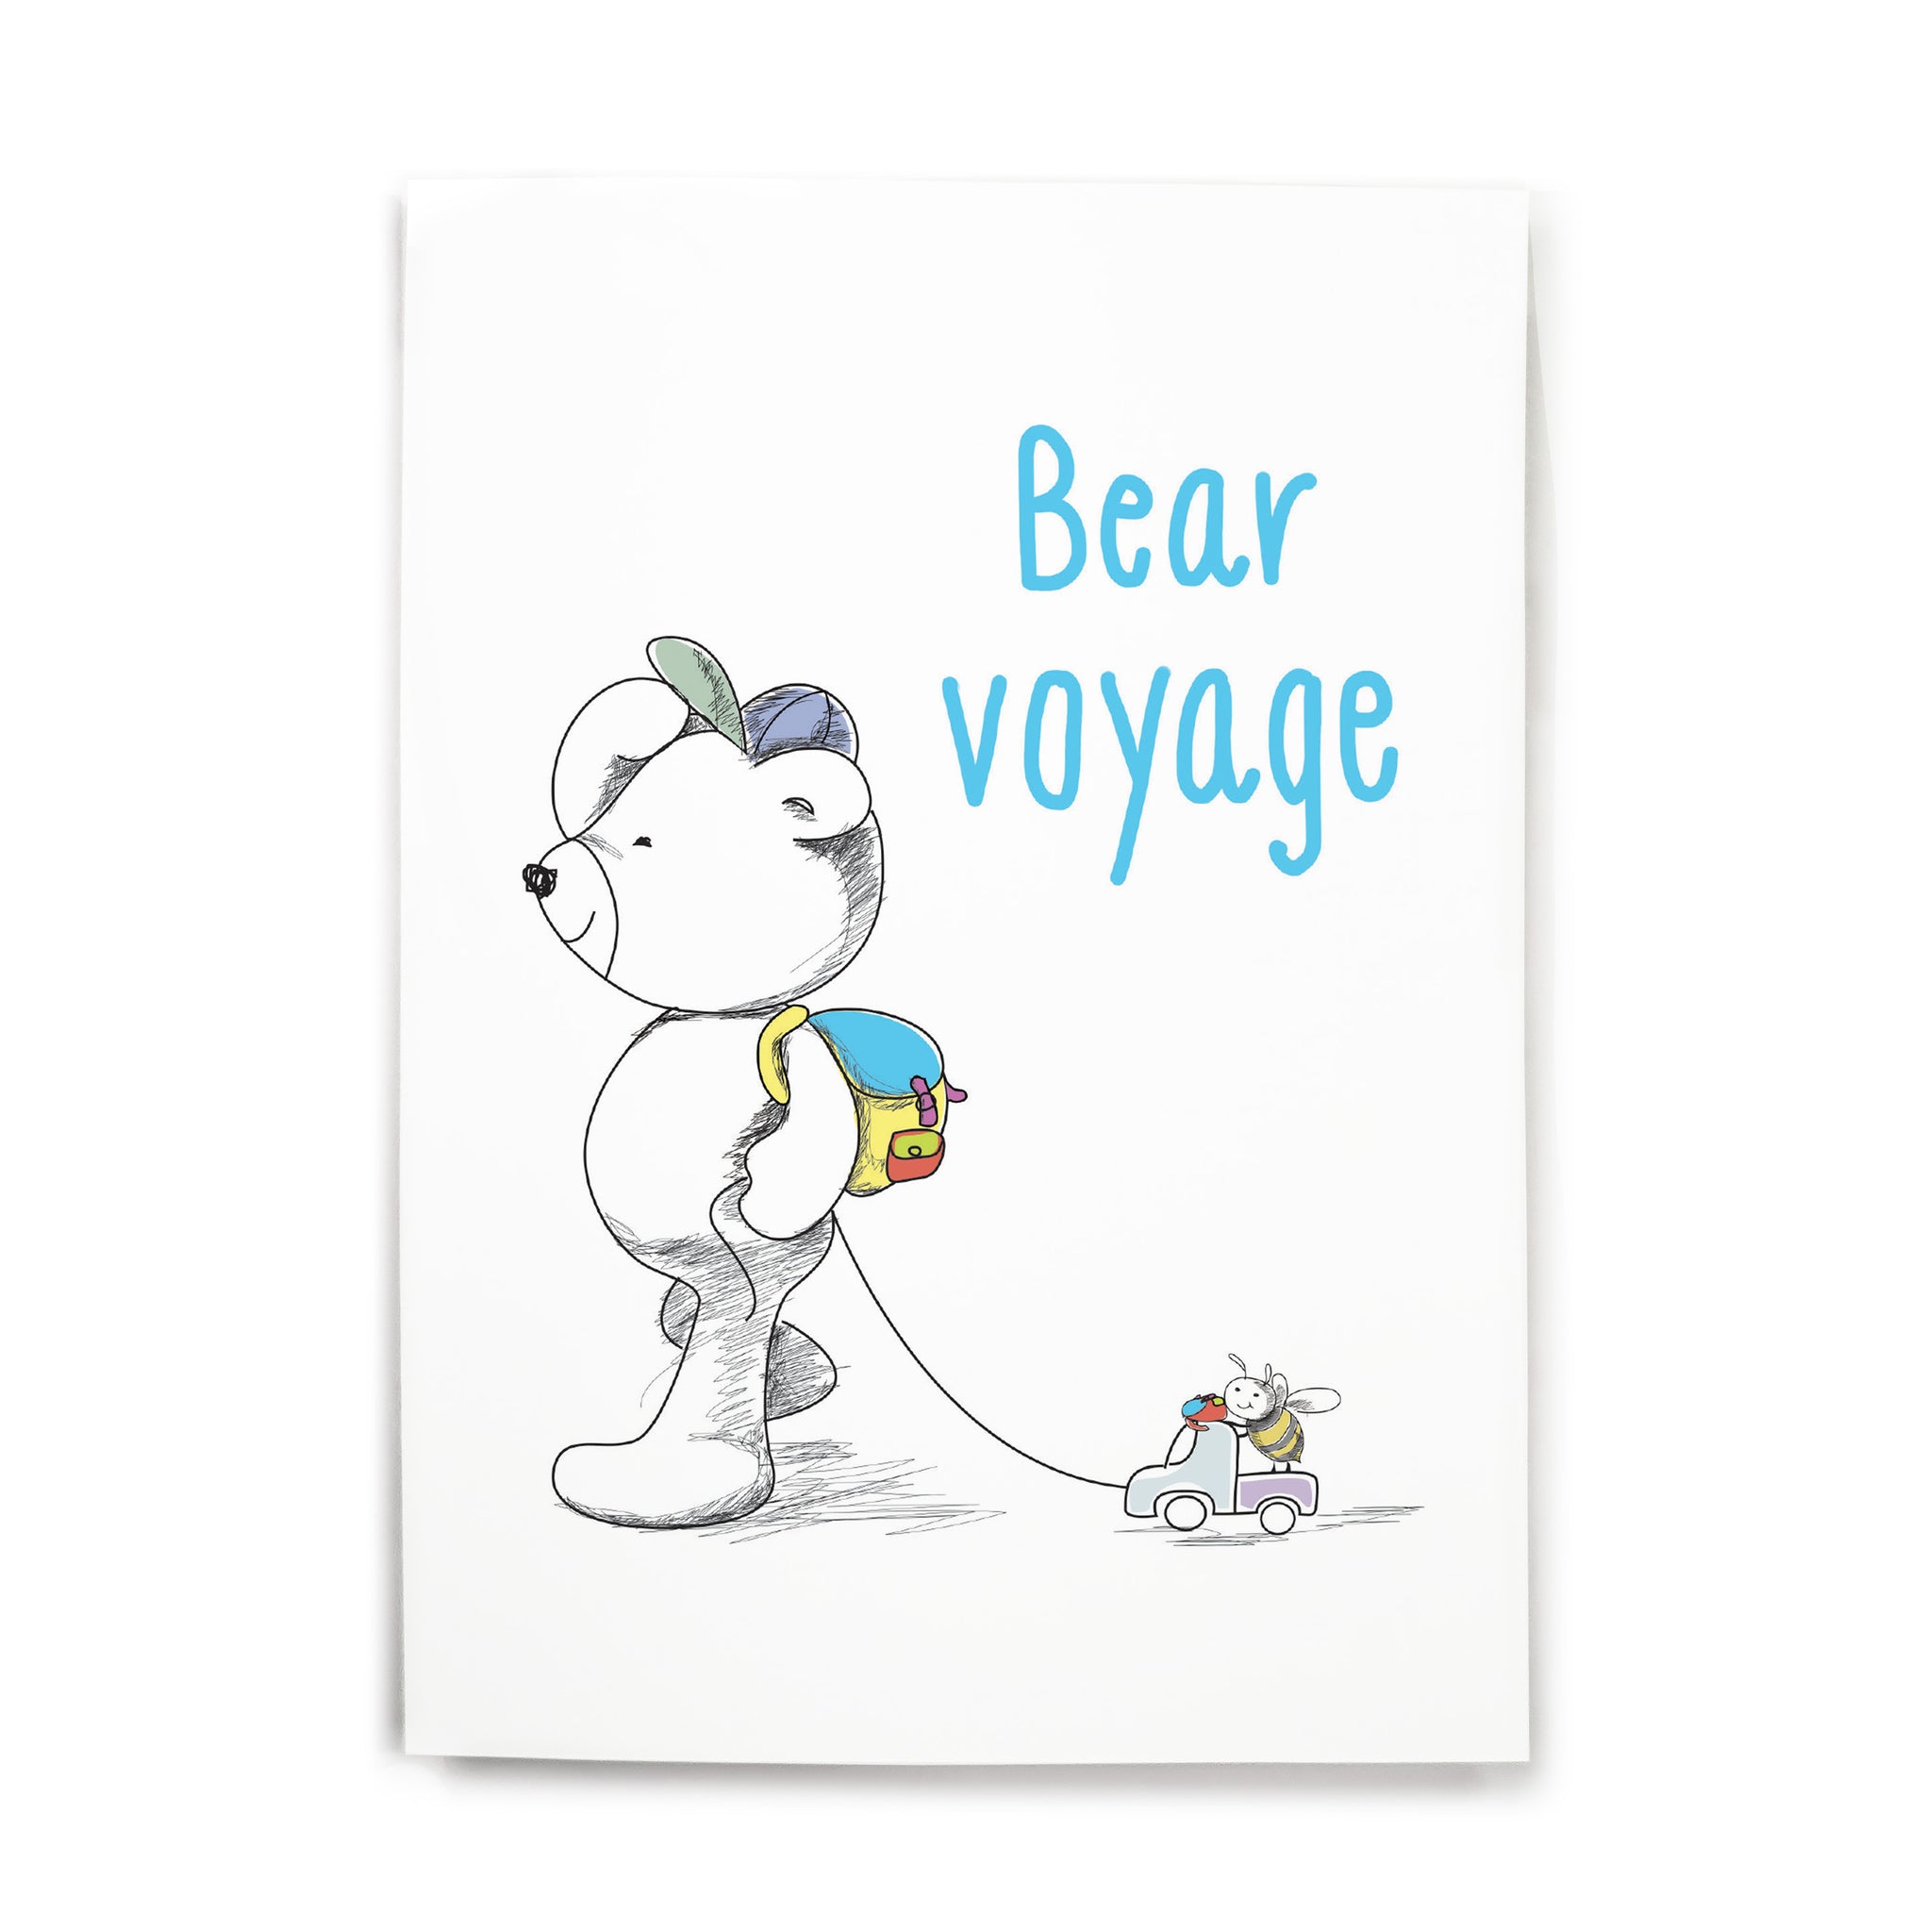 Bear voyage